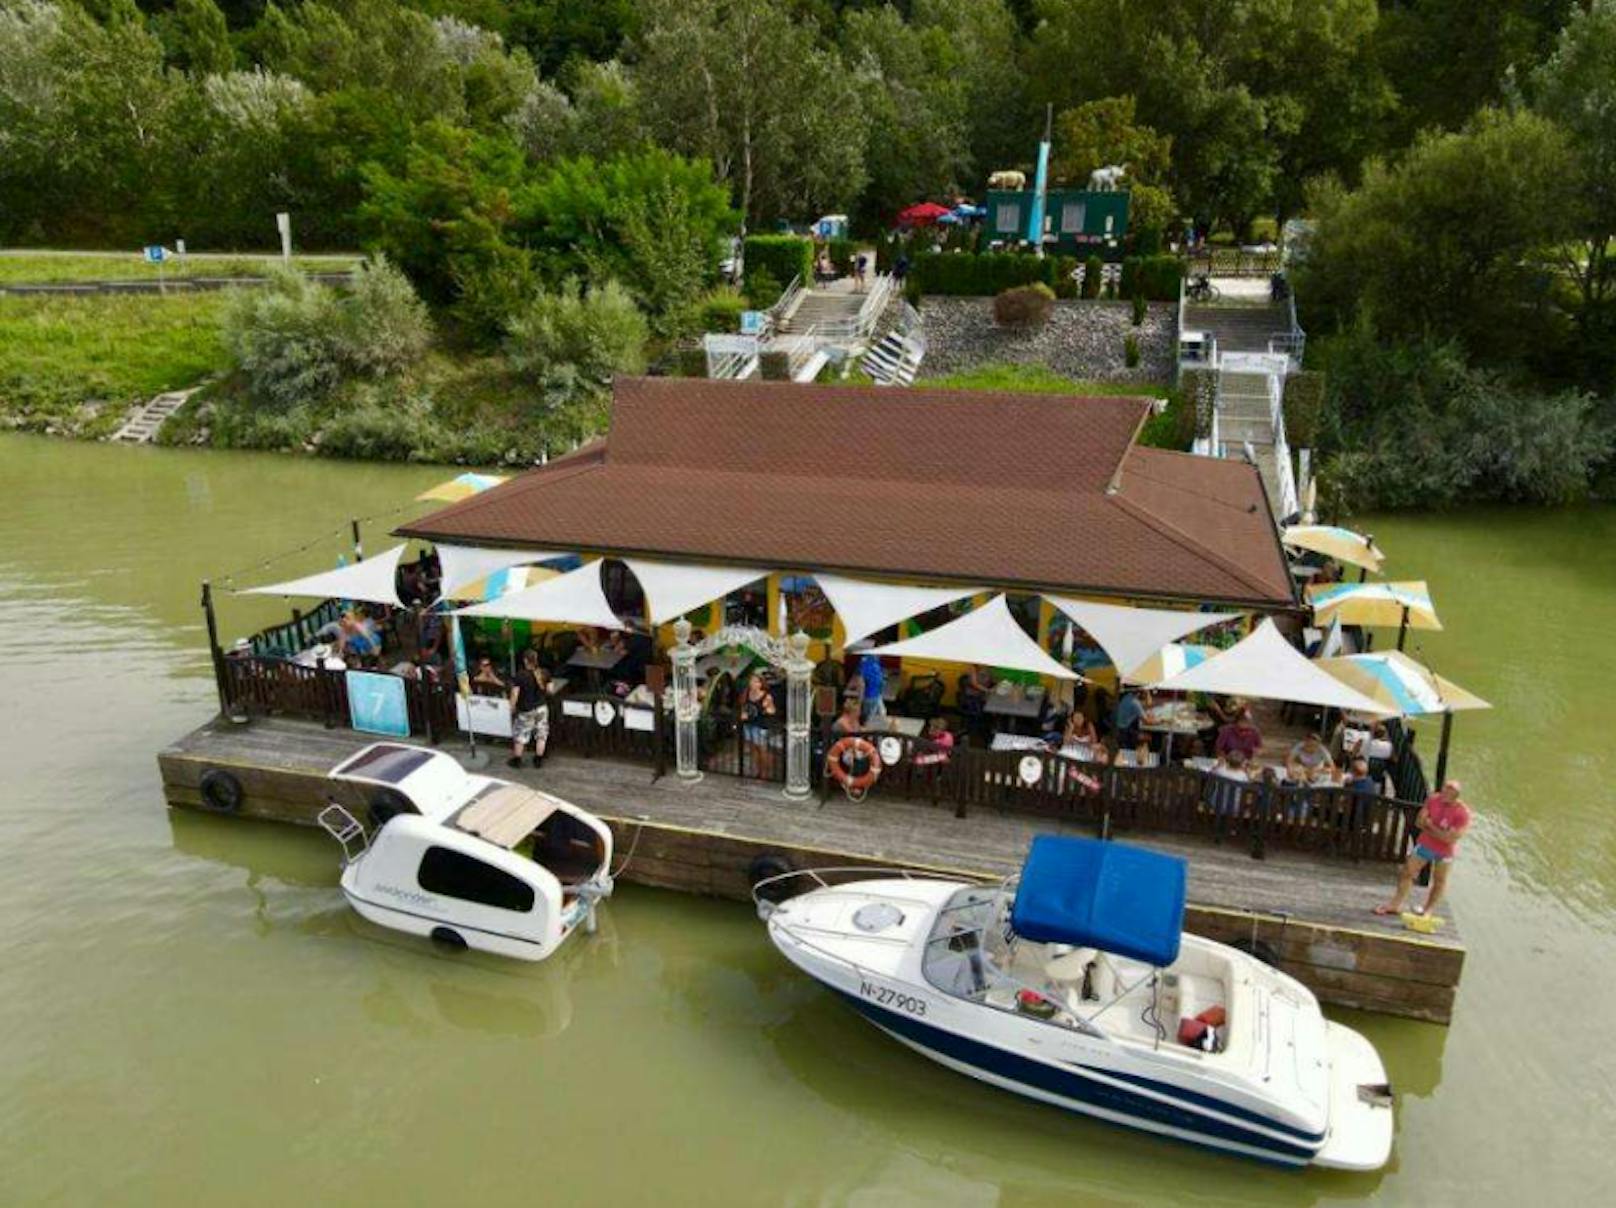 Schwimmendes Donau-Lokal um 490.000 Euro zu kaufen